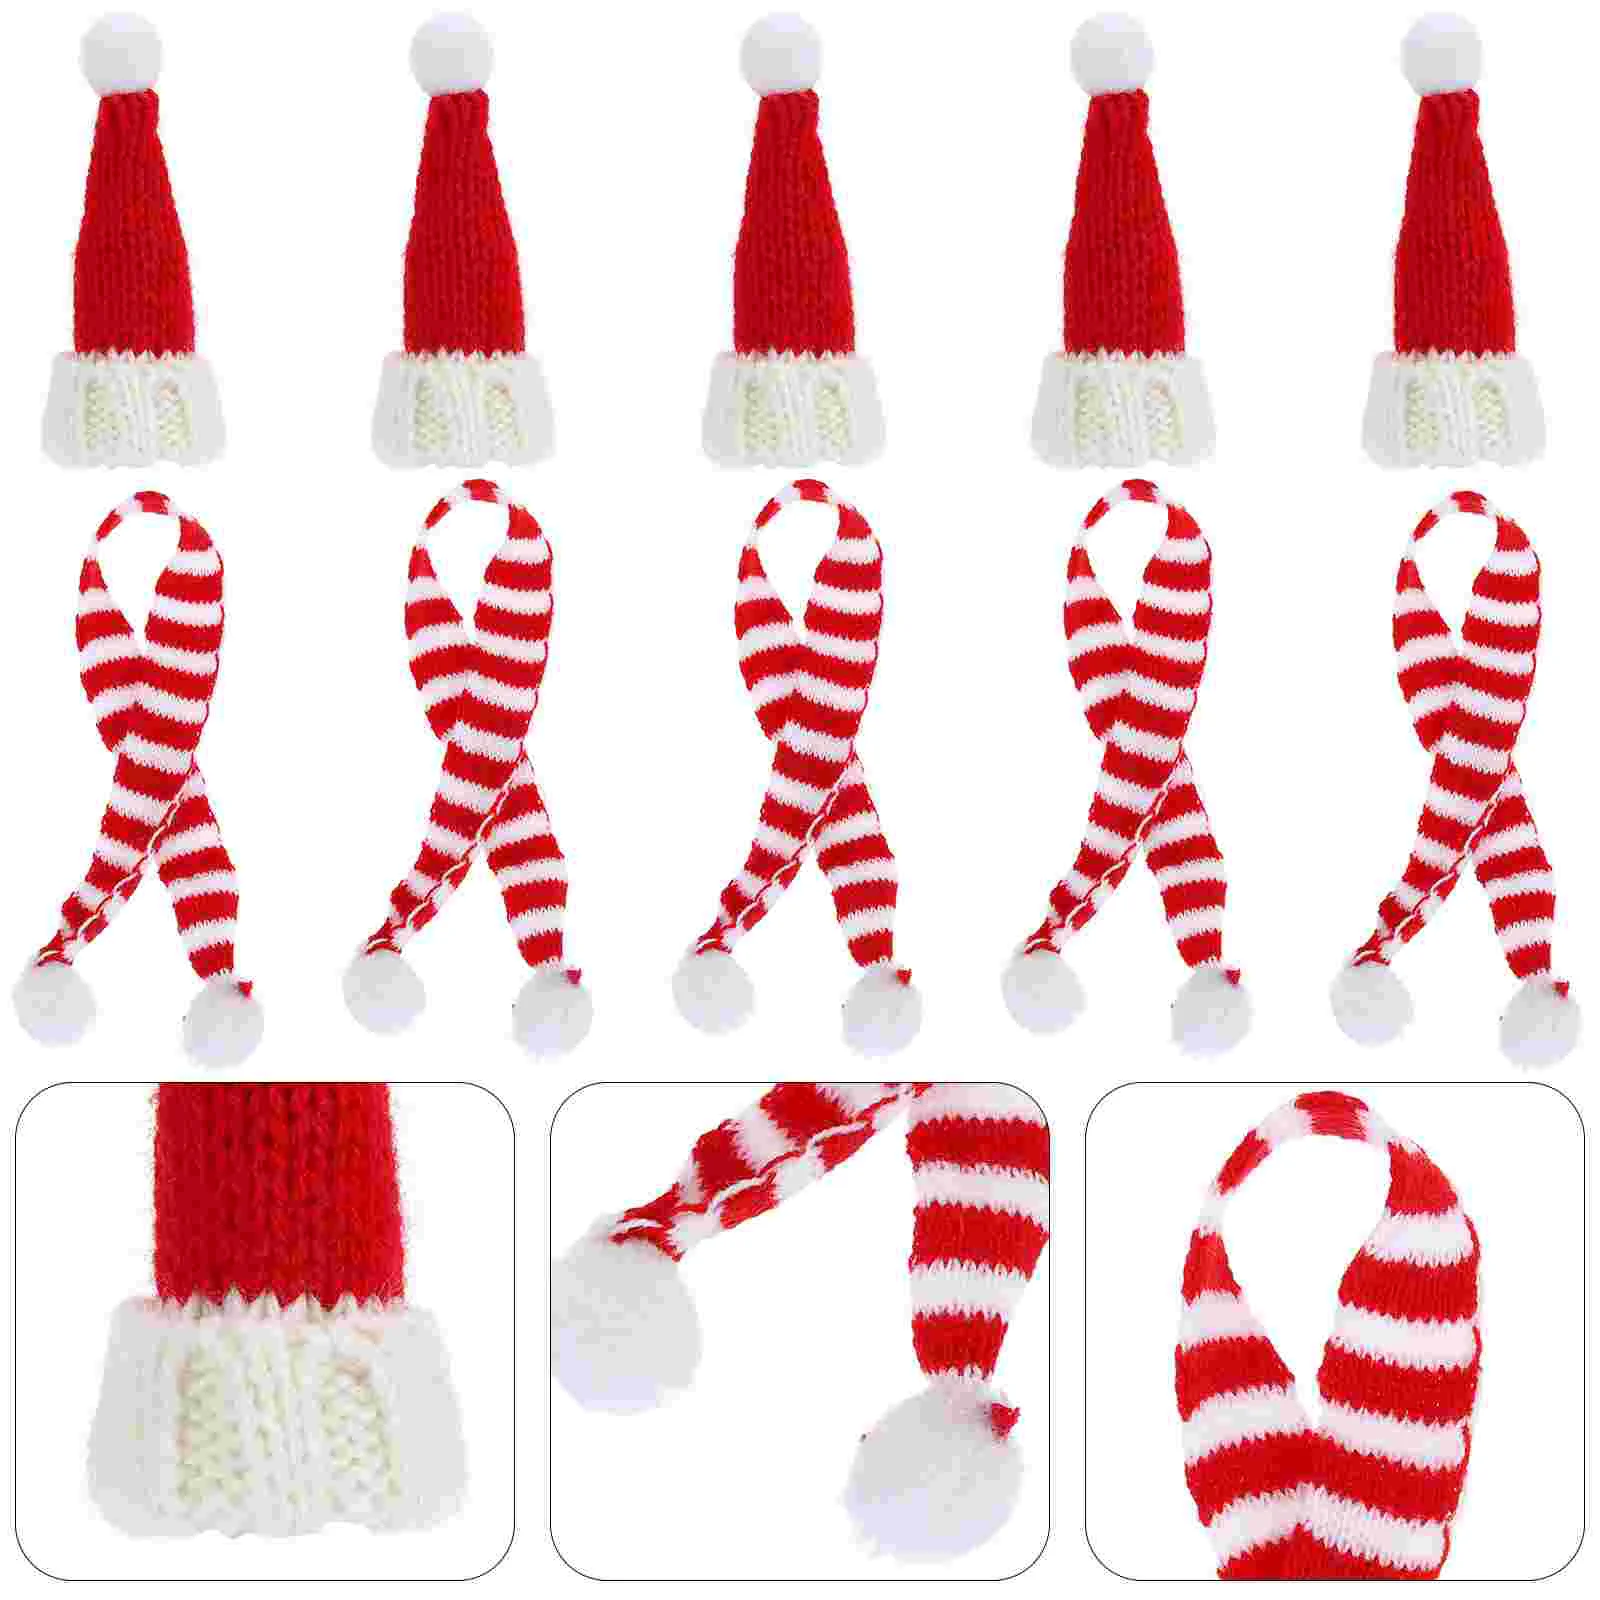 

Миниатюрные шапки Санта-Клаус шарф Рождественская Крышка для винной бутылки принадлежности для творчества миниатюрные рождественские украшения для дома и магазина